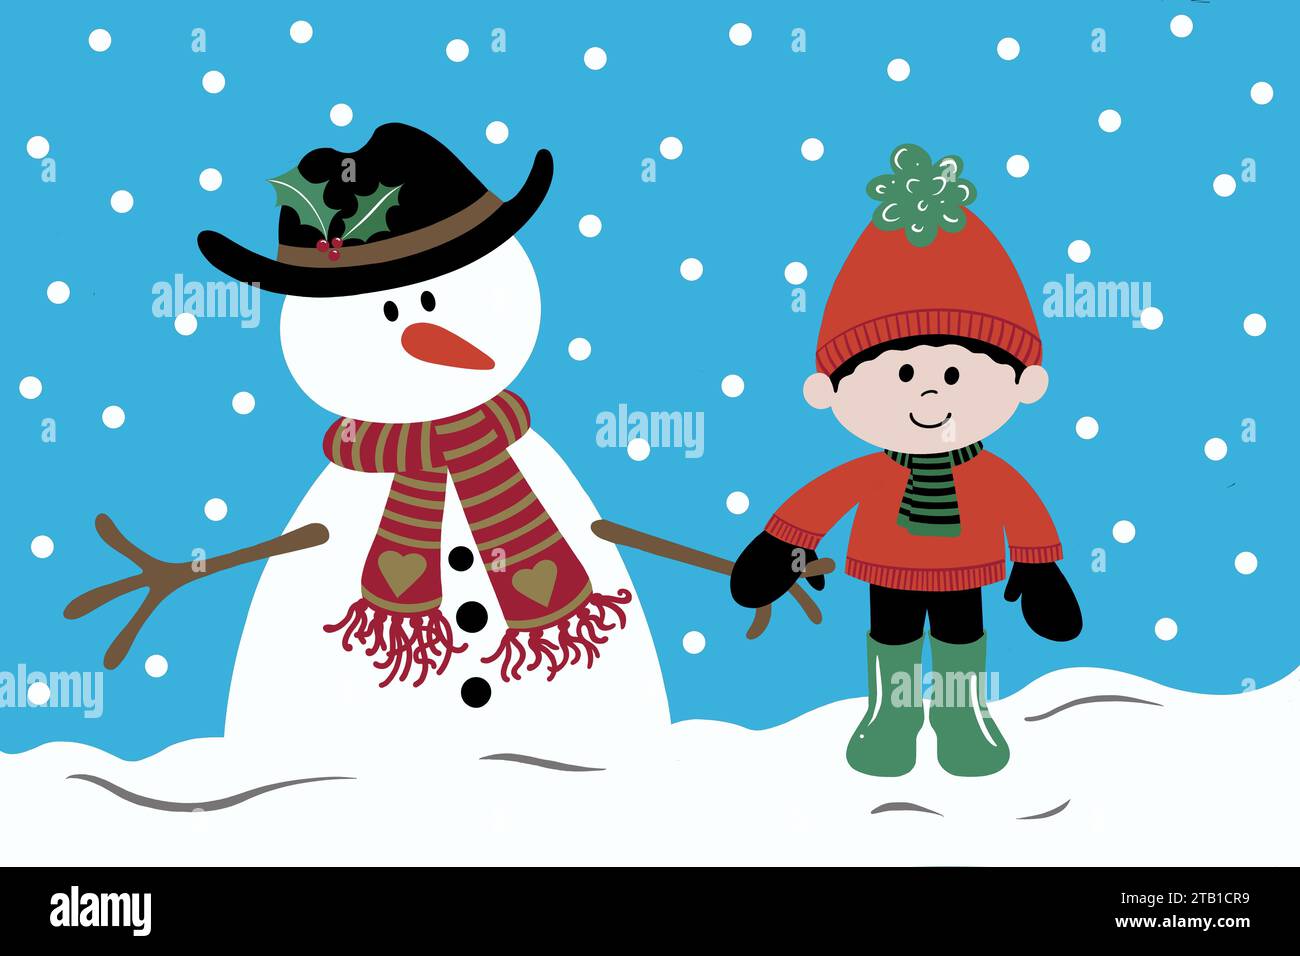 Bonhomme de neige et garçon par une journée froide de neige. Les deux amis se tiennent la main dans la neige en hiver. L'enfant est enveloppé dans un pull confortable et chapeau de boule. Banque D'Images